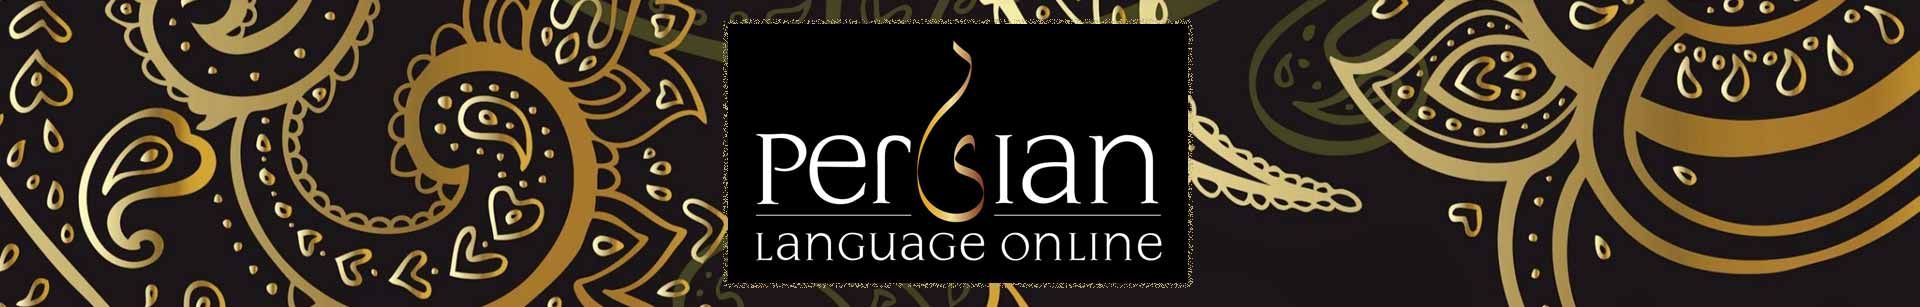 persian languages online lessons 968d1c0c